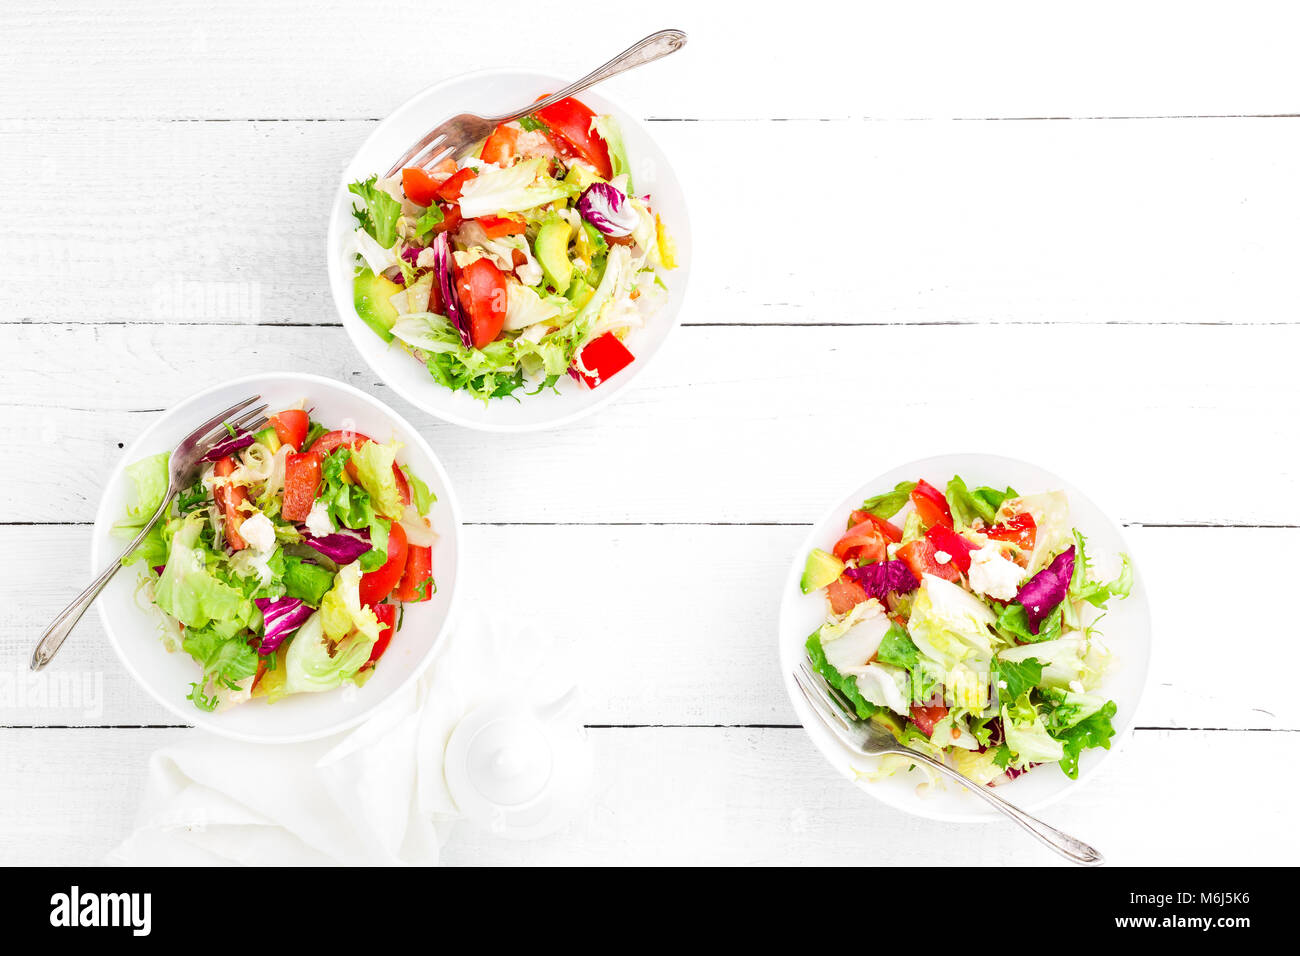 Ensalada de verduras saludables con verdes frescos, lechuga, aguacate, tomate, seet pimienta y queso de cabra. Un delicioso y nutritivo plato de dieta para el desayuno. S Foto de stock